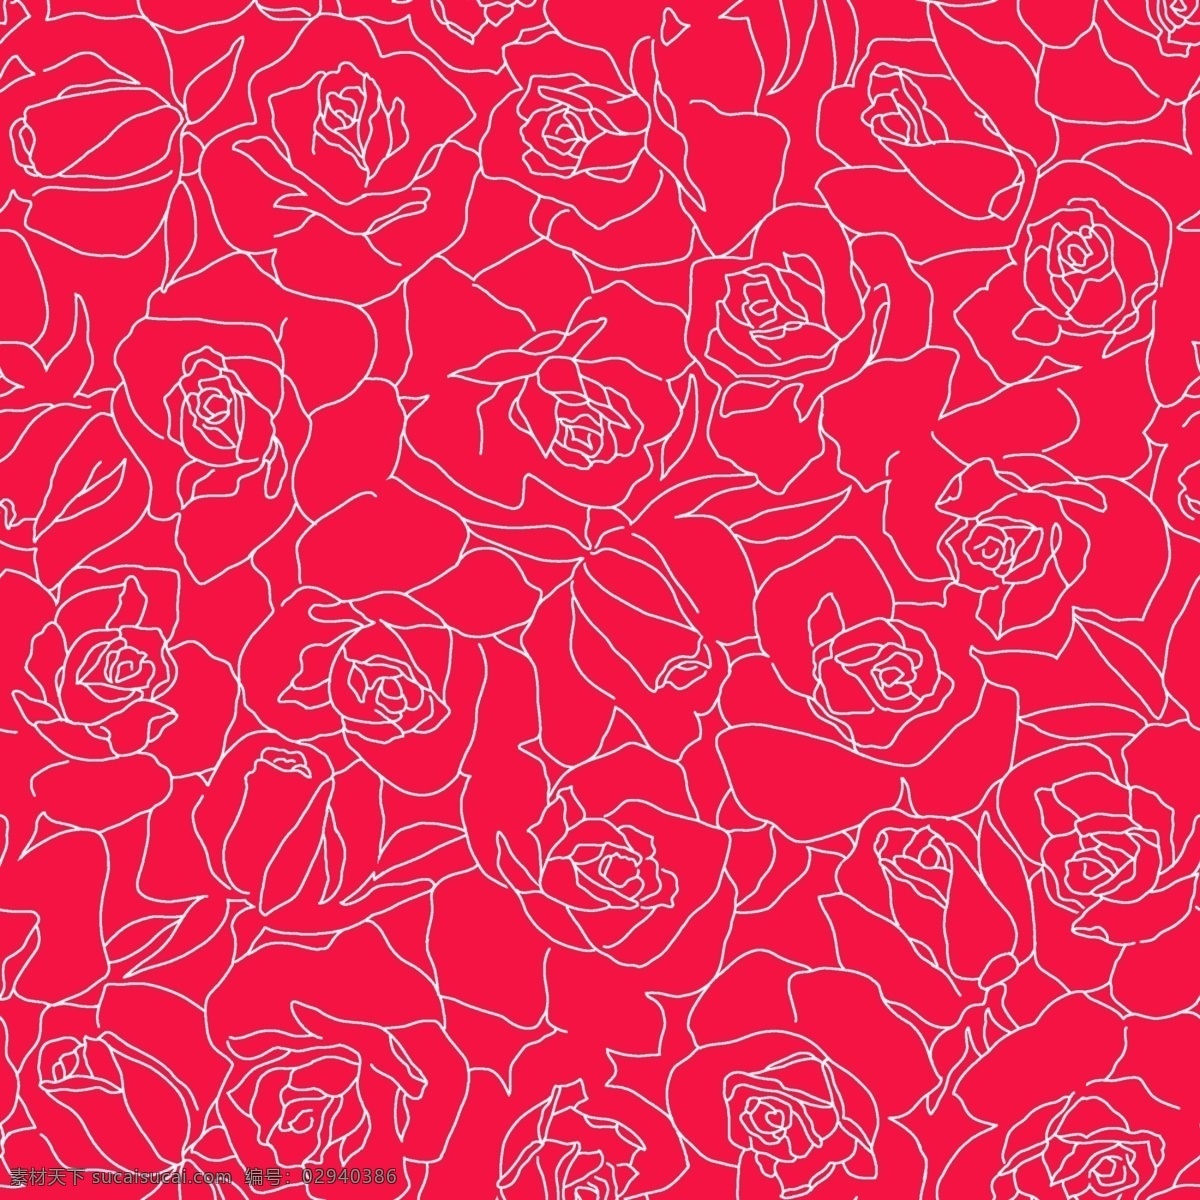 红 底线 花朵 底纹 背景 红底线 花朵底纹 花朵背景 线描花朵 红底 线描 花卉 分层